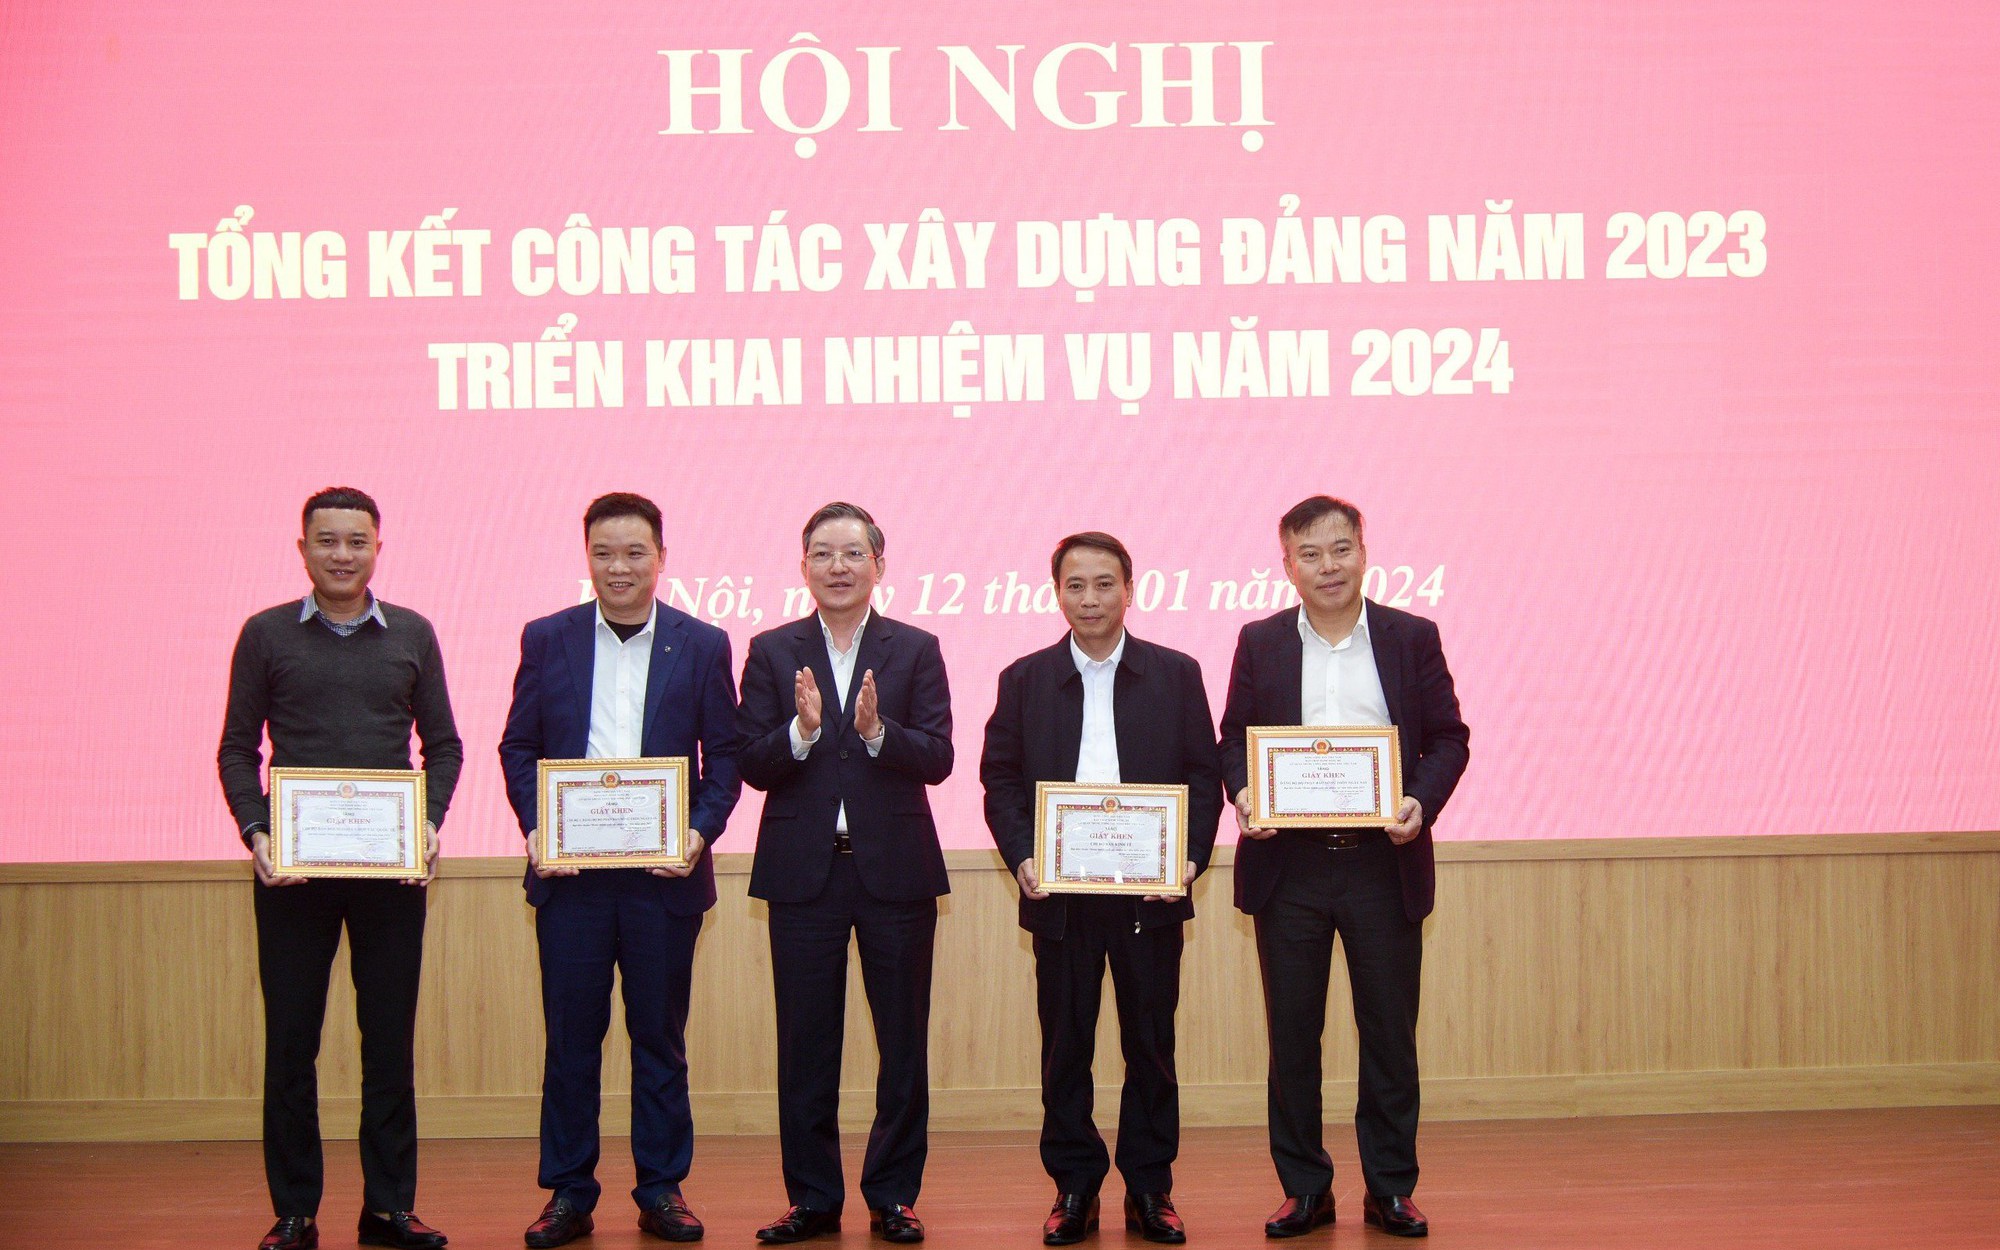 Đảng bộ cơ quan T.Ư Hội Nông dân Việt Nam tổng kết công tác xây dựng Đảng năm 2023, triển khai nhiệm vụ năm 2024